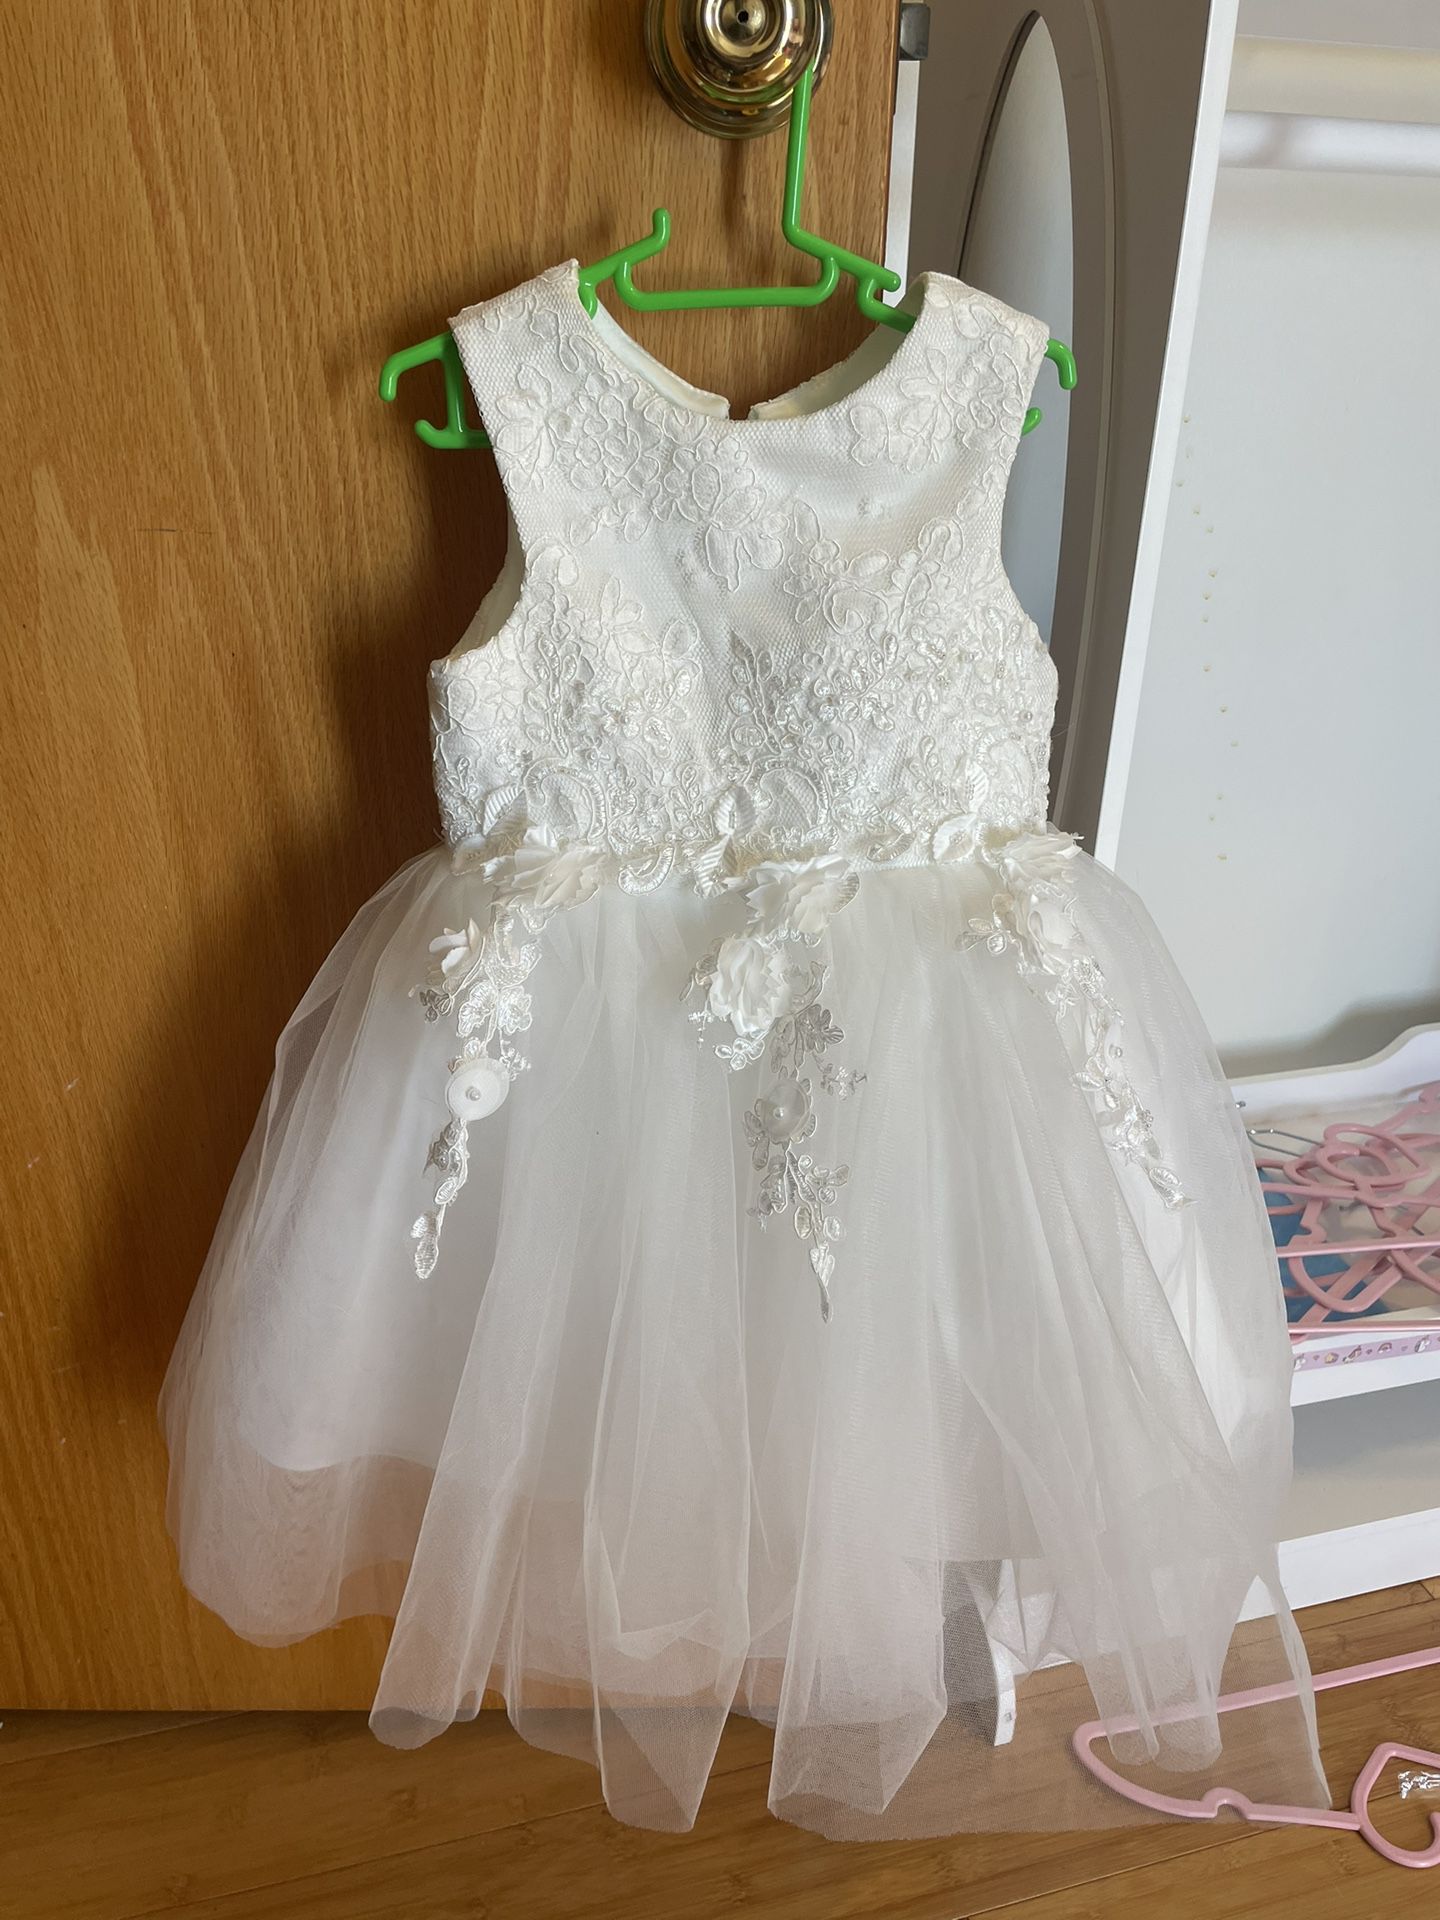 White Toddler Dress - 2T/3T